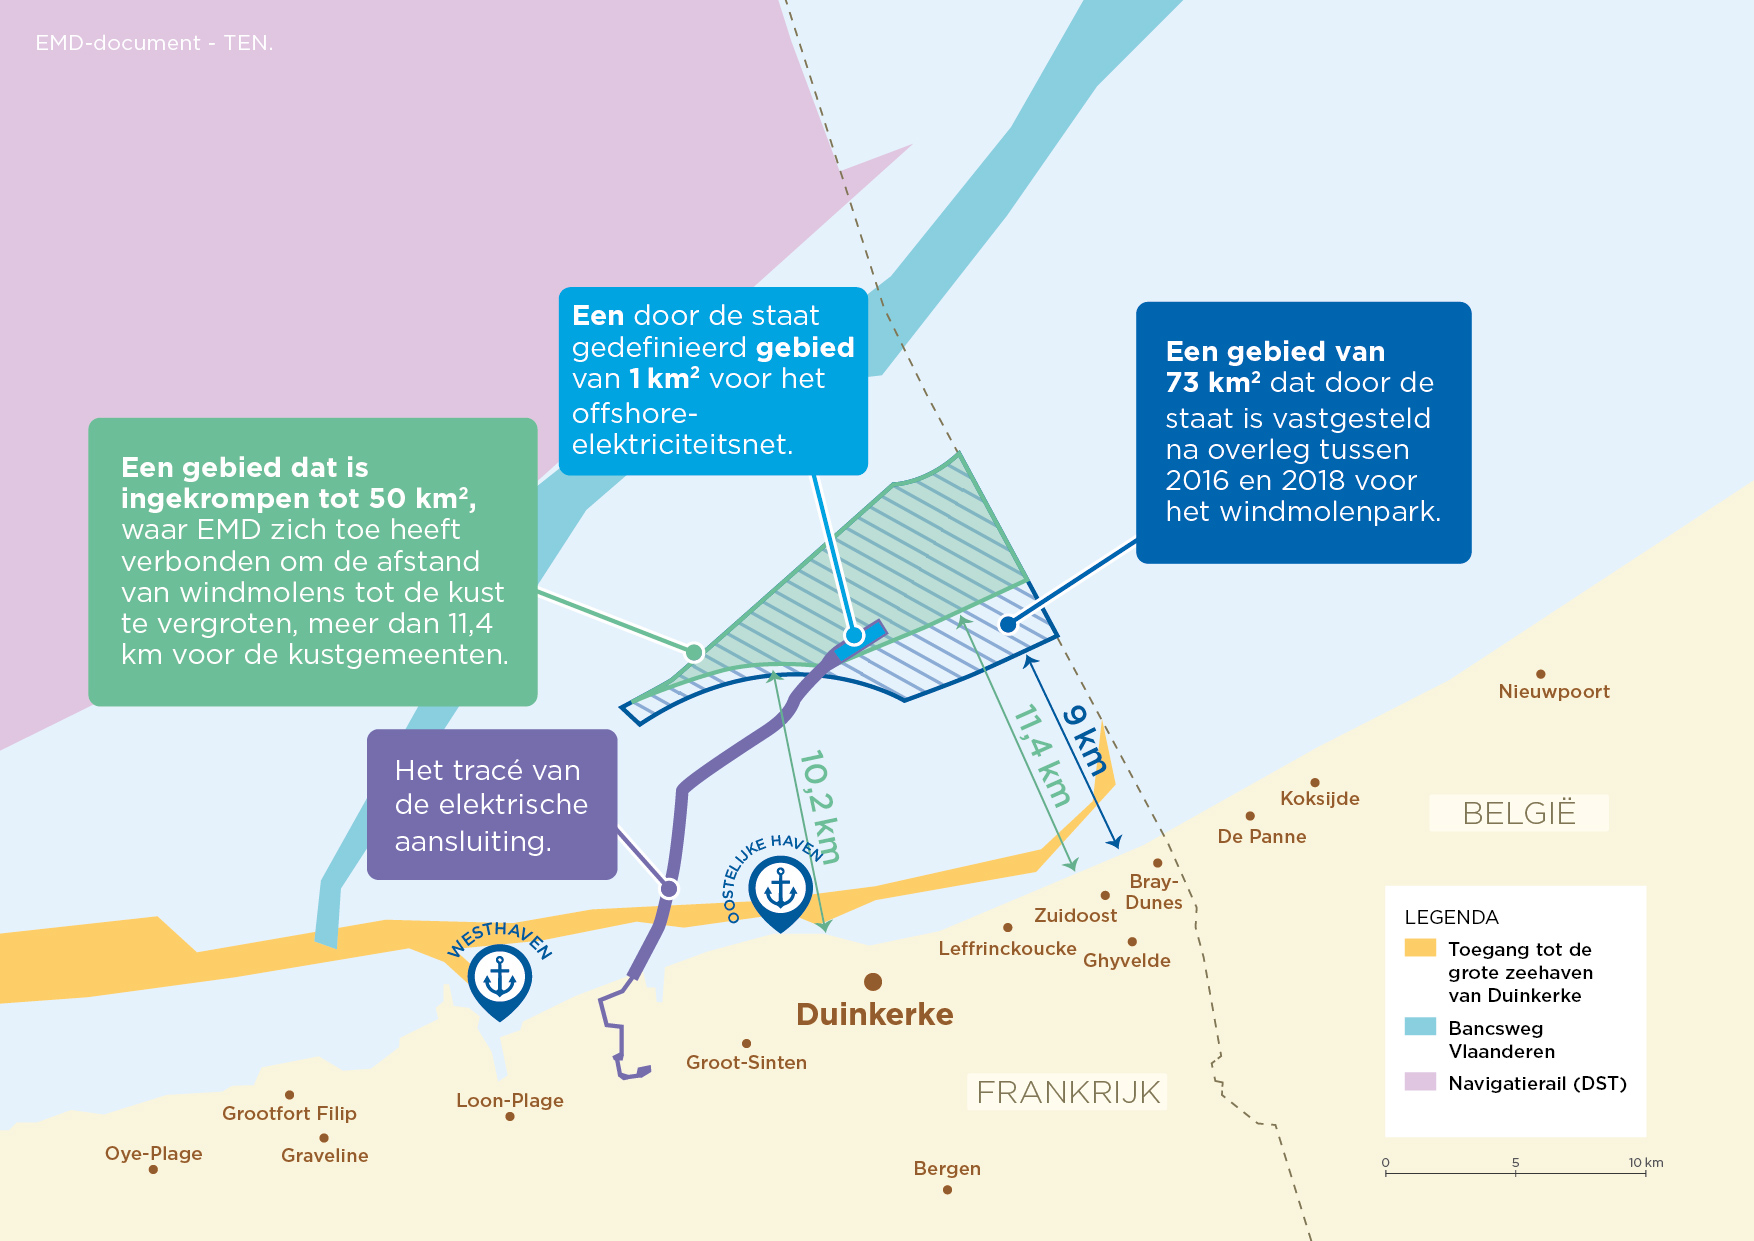 Voorstel locatie offshore windpark voor Duinkerke